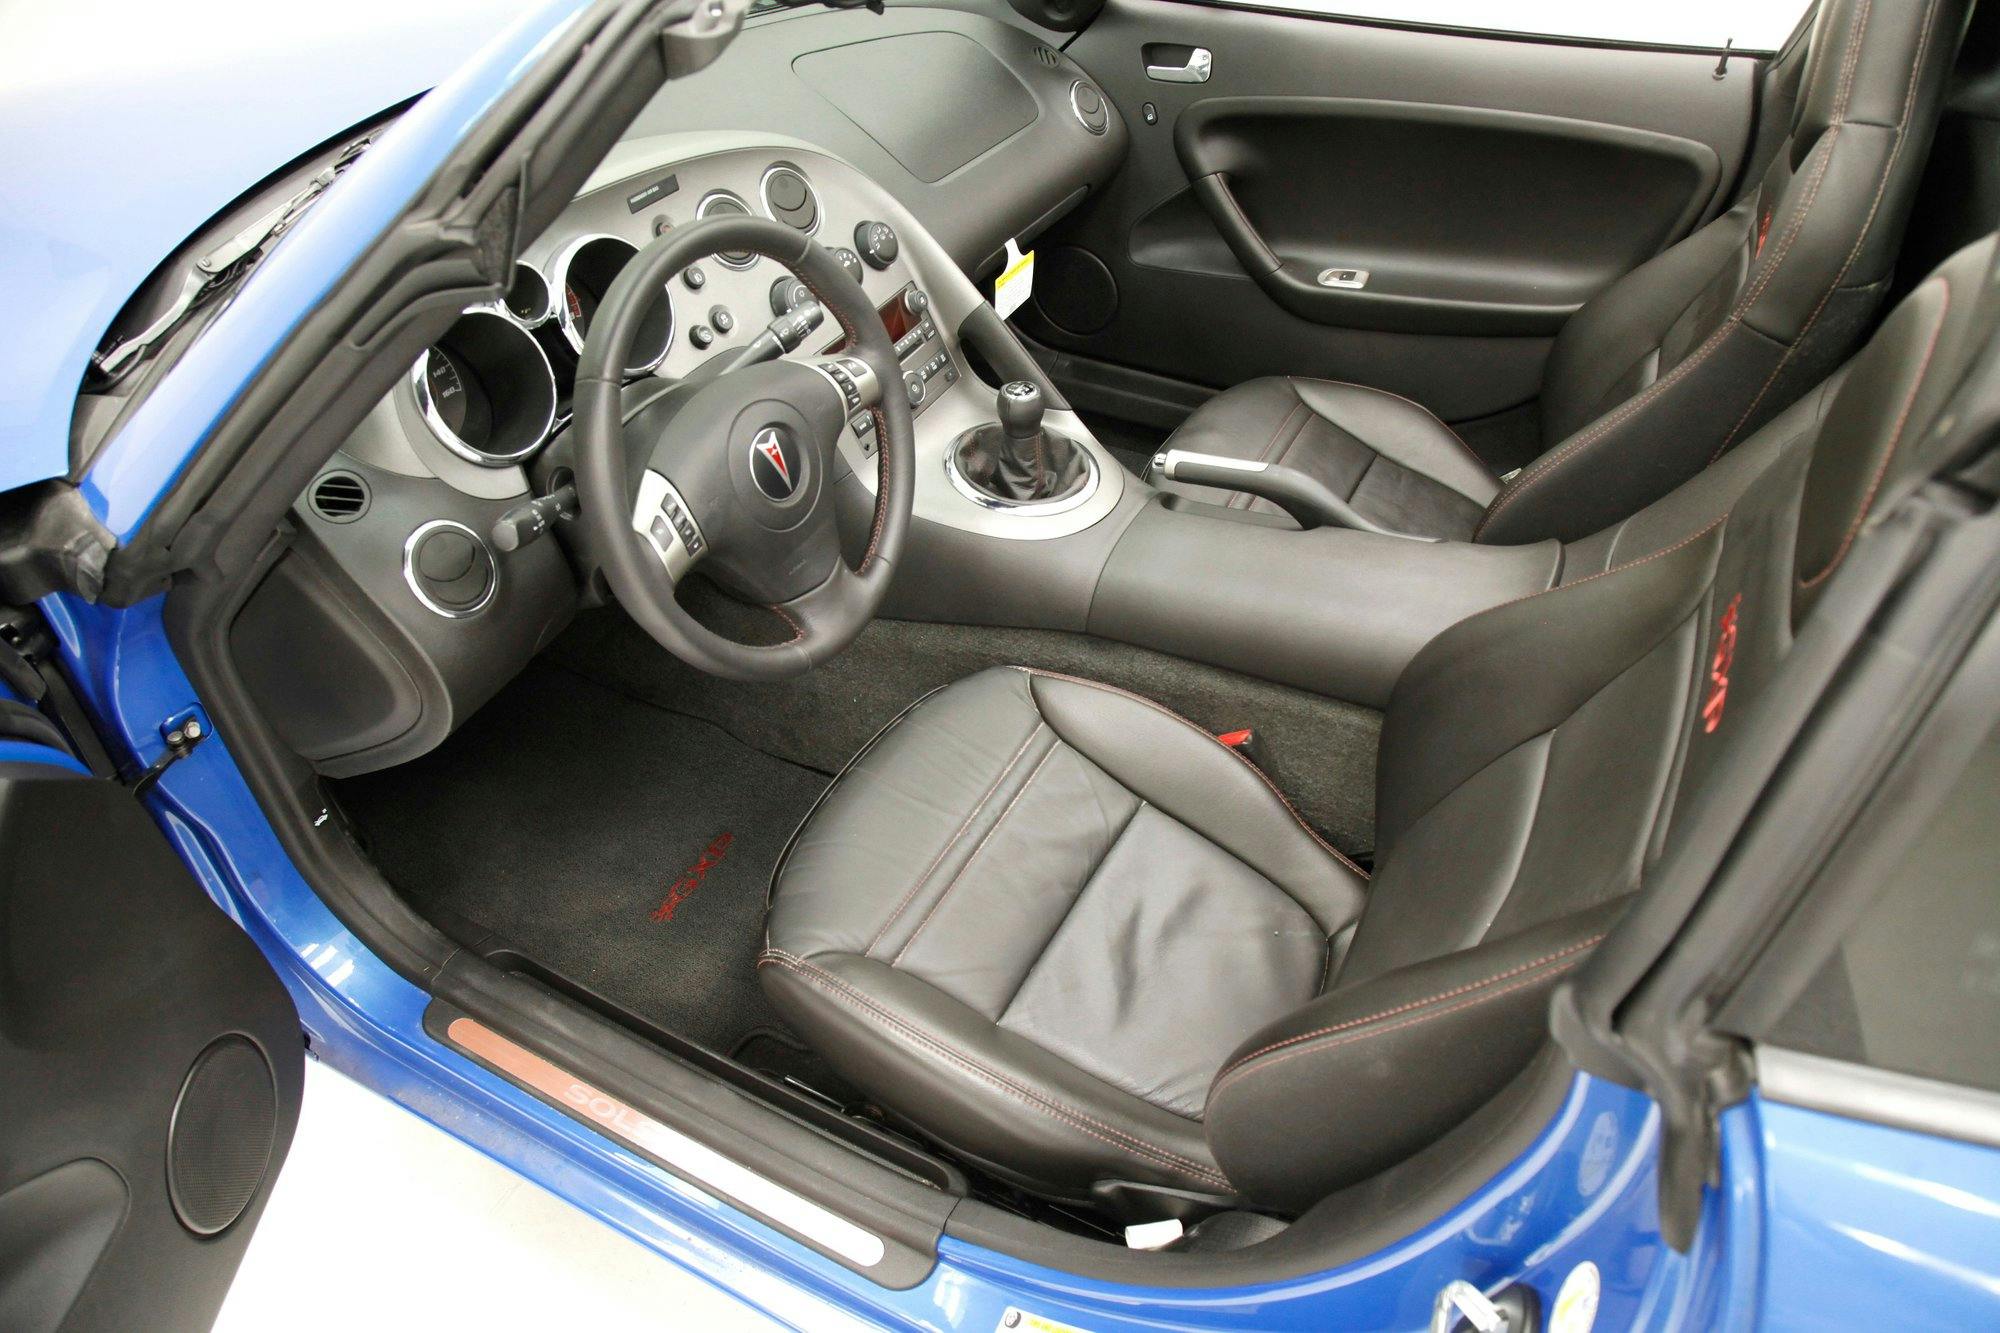 2009 Pontiac Solstice GXP interior